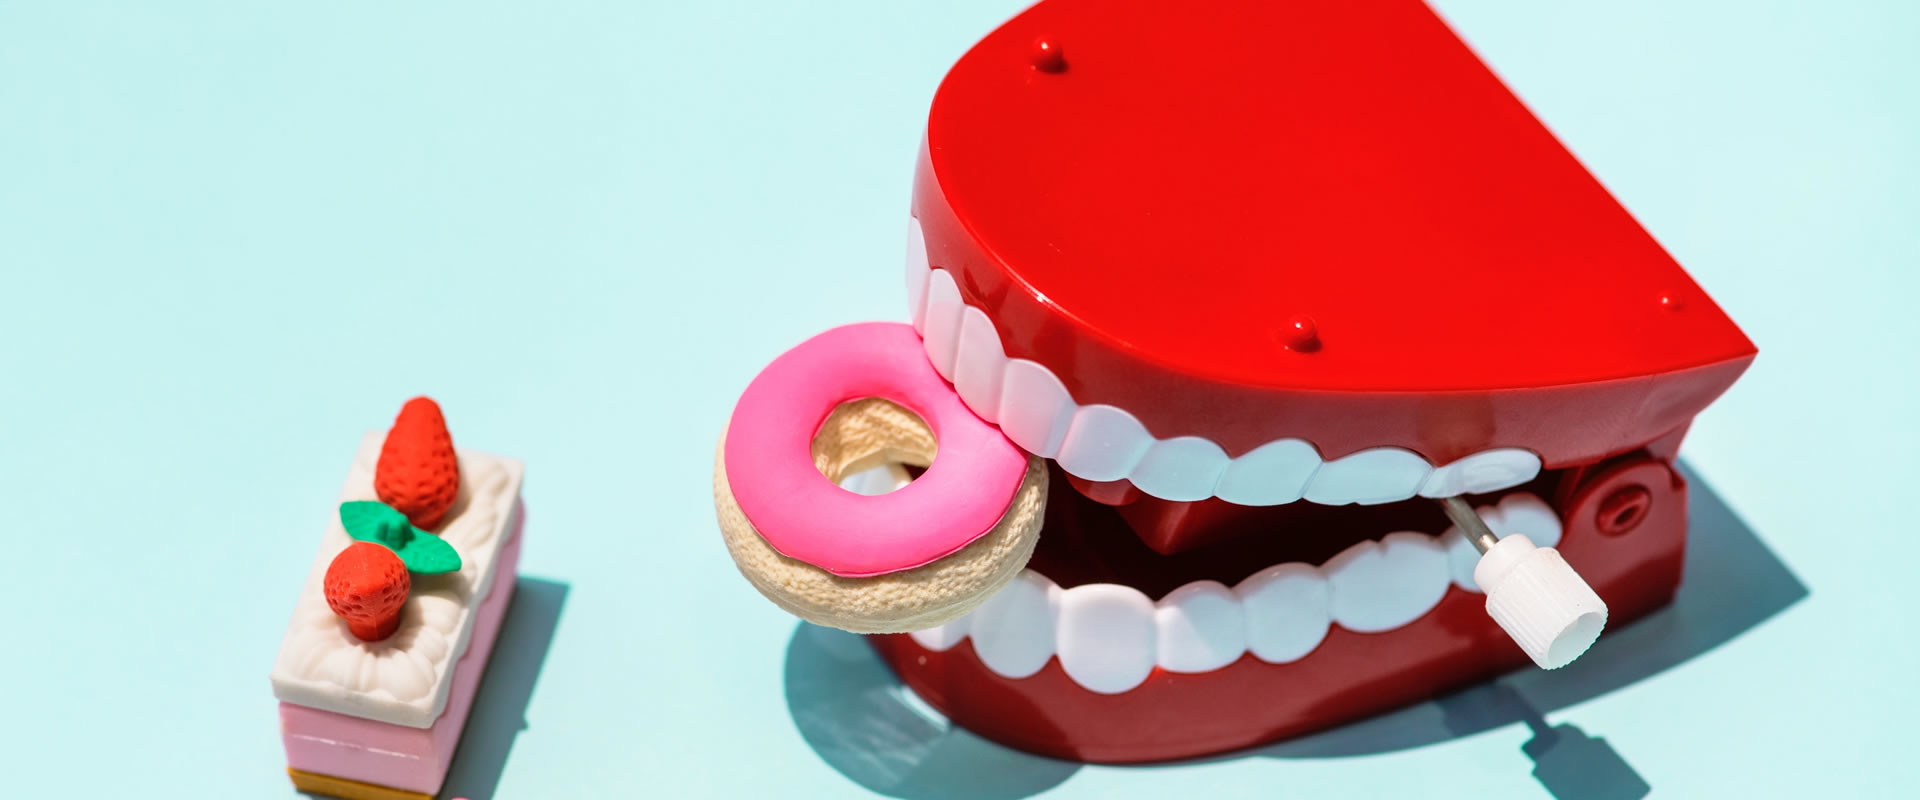 Ce intelegem prin albire profesionala a dintilor?